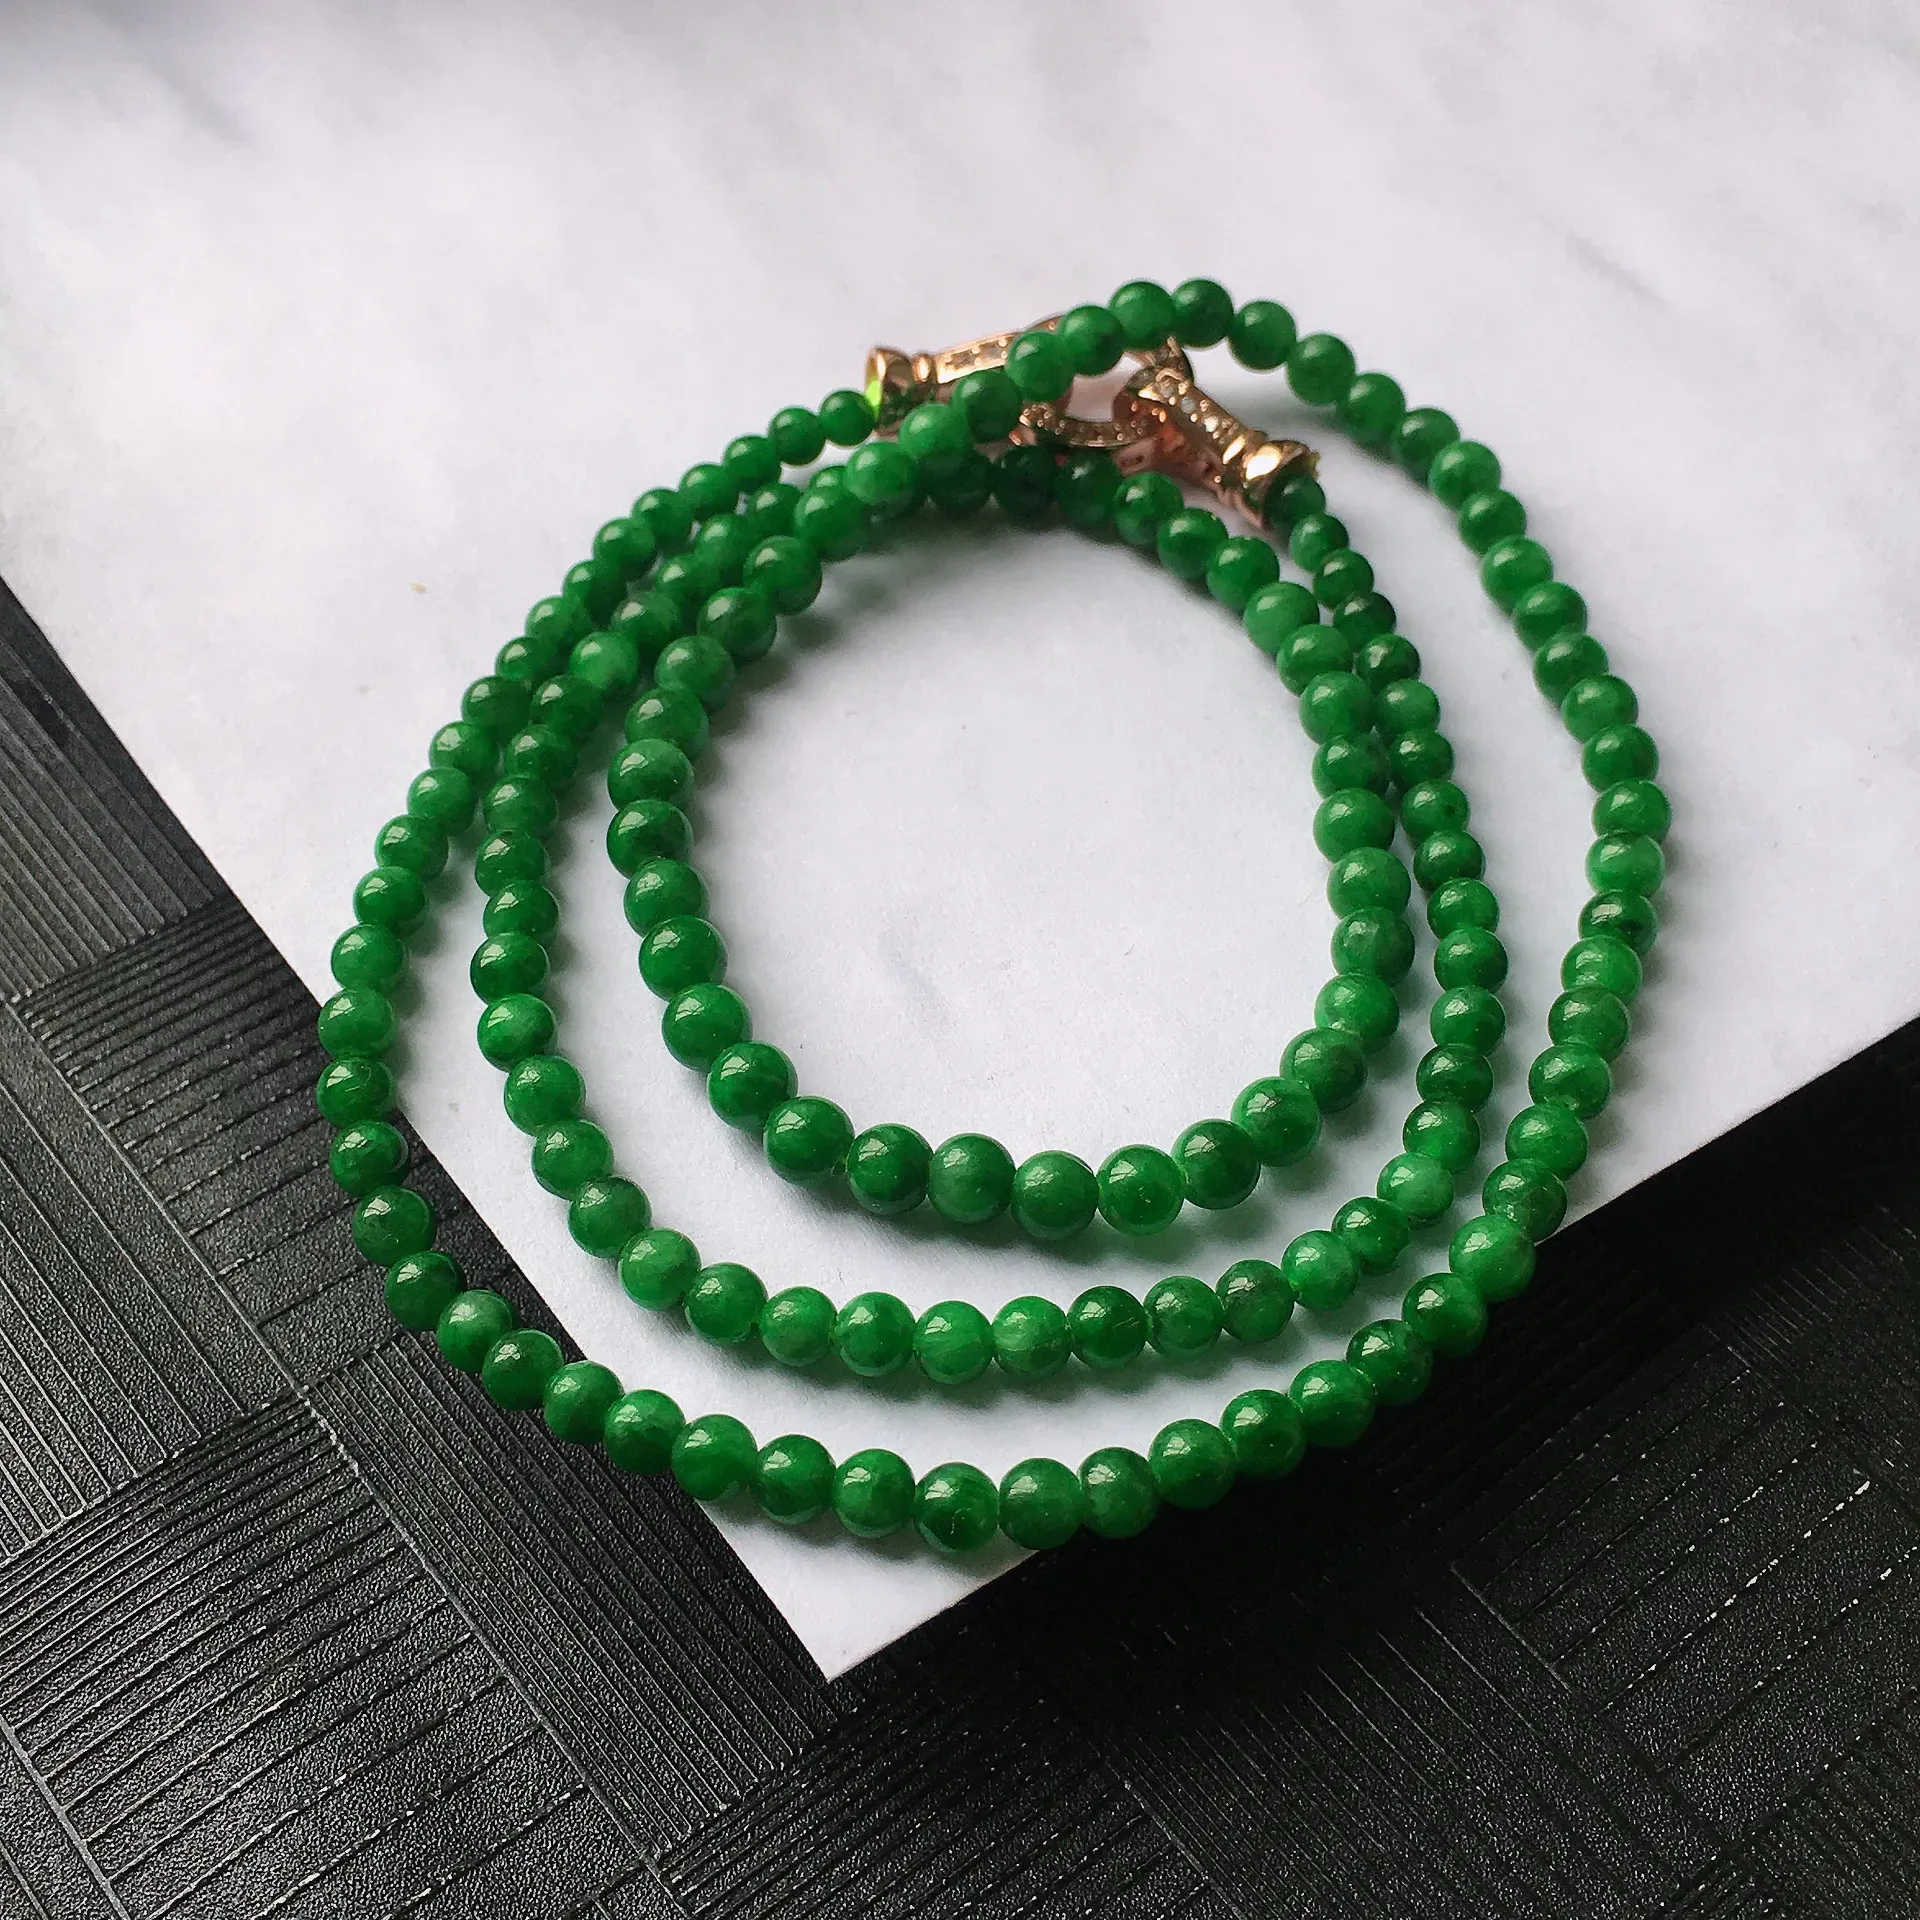 天然A货翡翠满阳绿圆珠项链，种水好玉质细腻温润，颜色漂亮。尺寸：取大 4.6mm 取小 3.6mm 